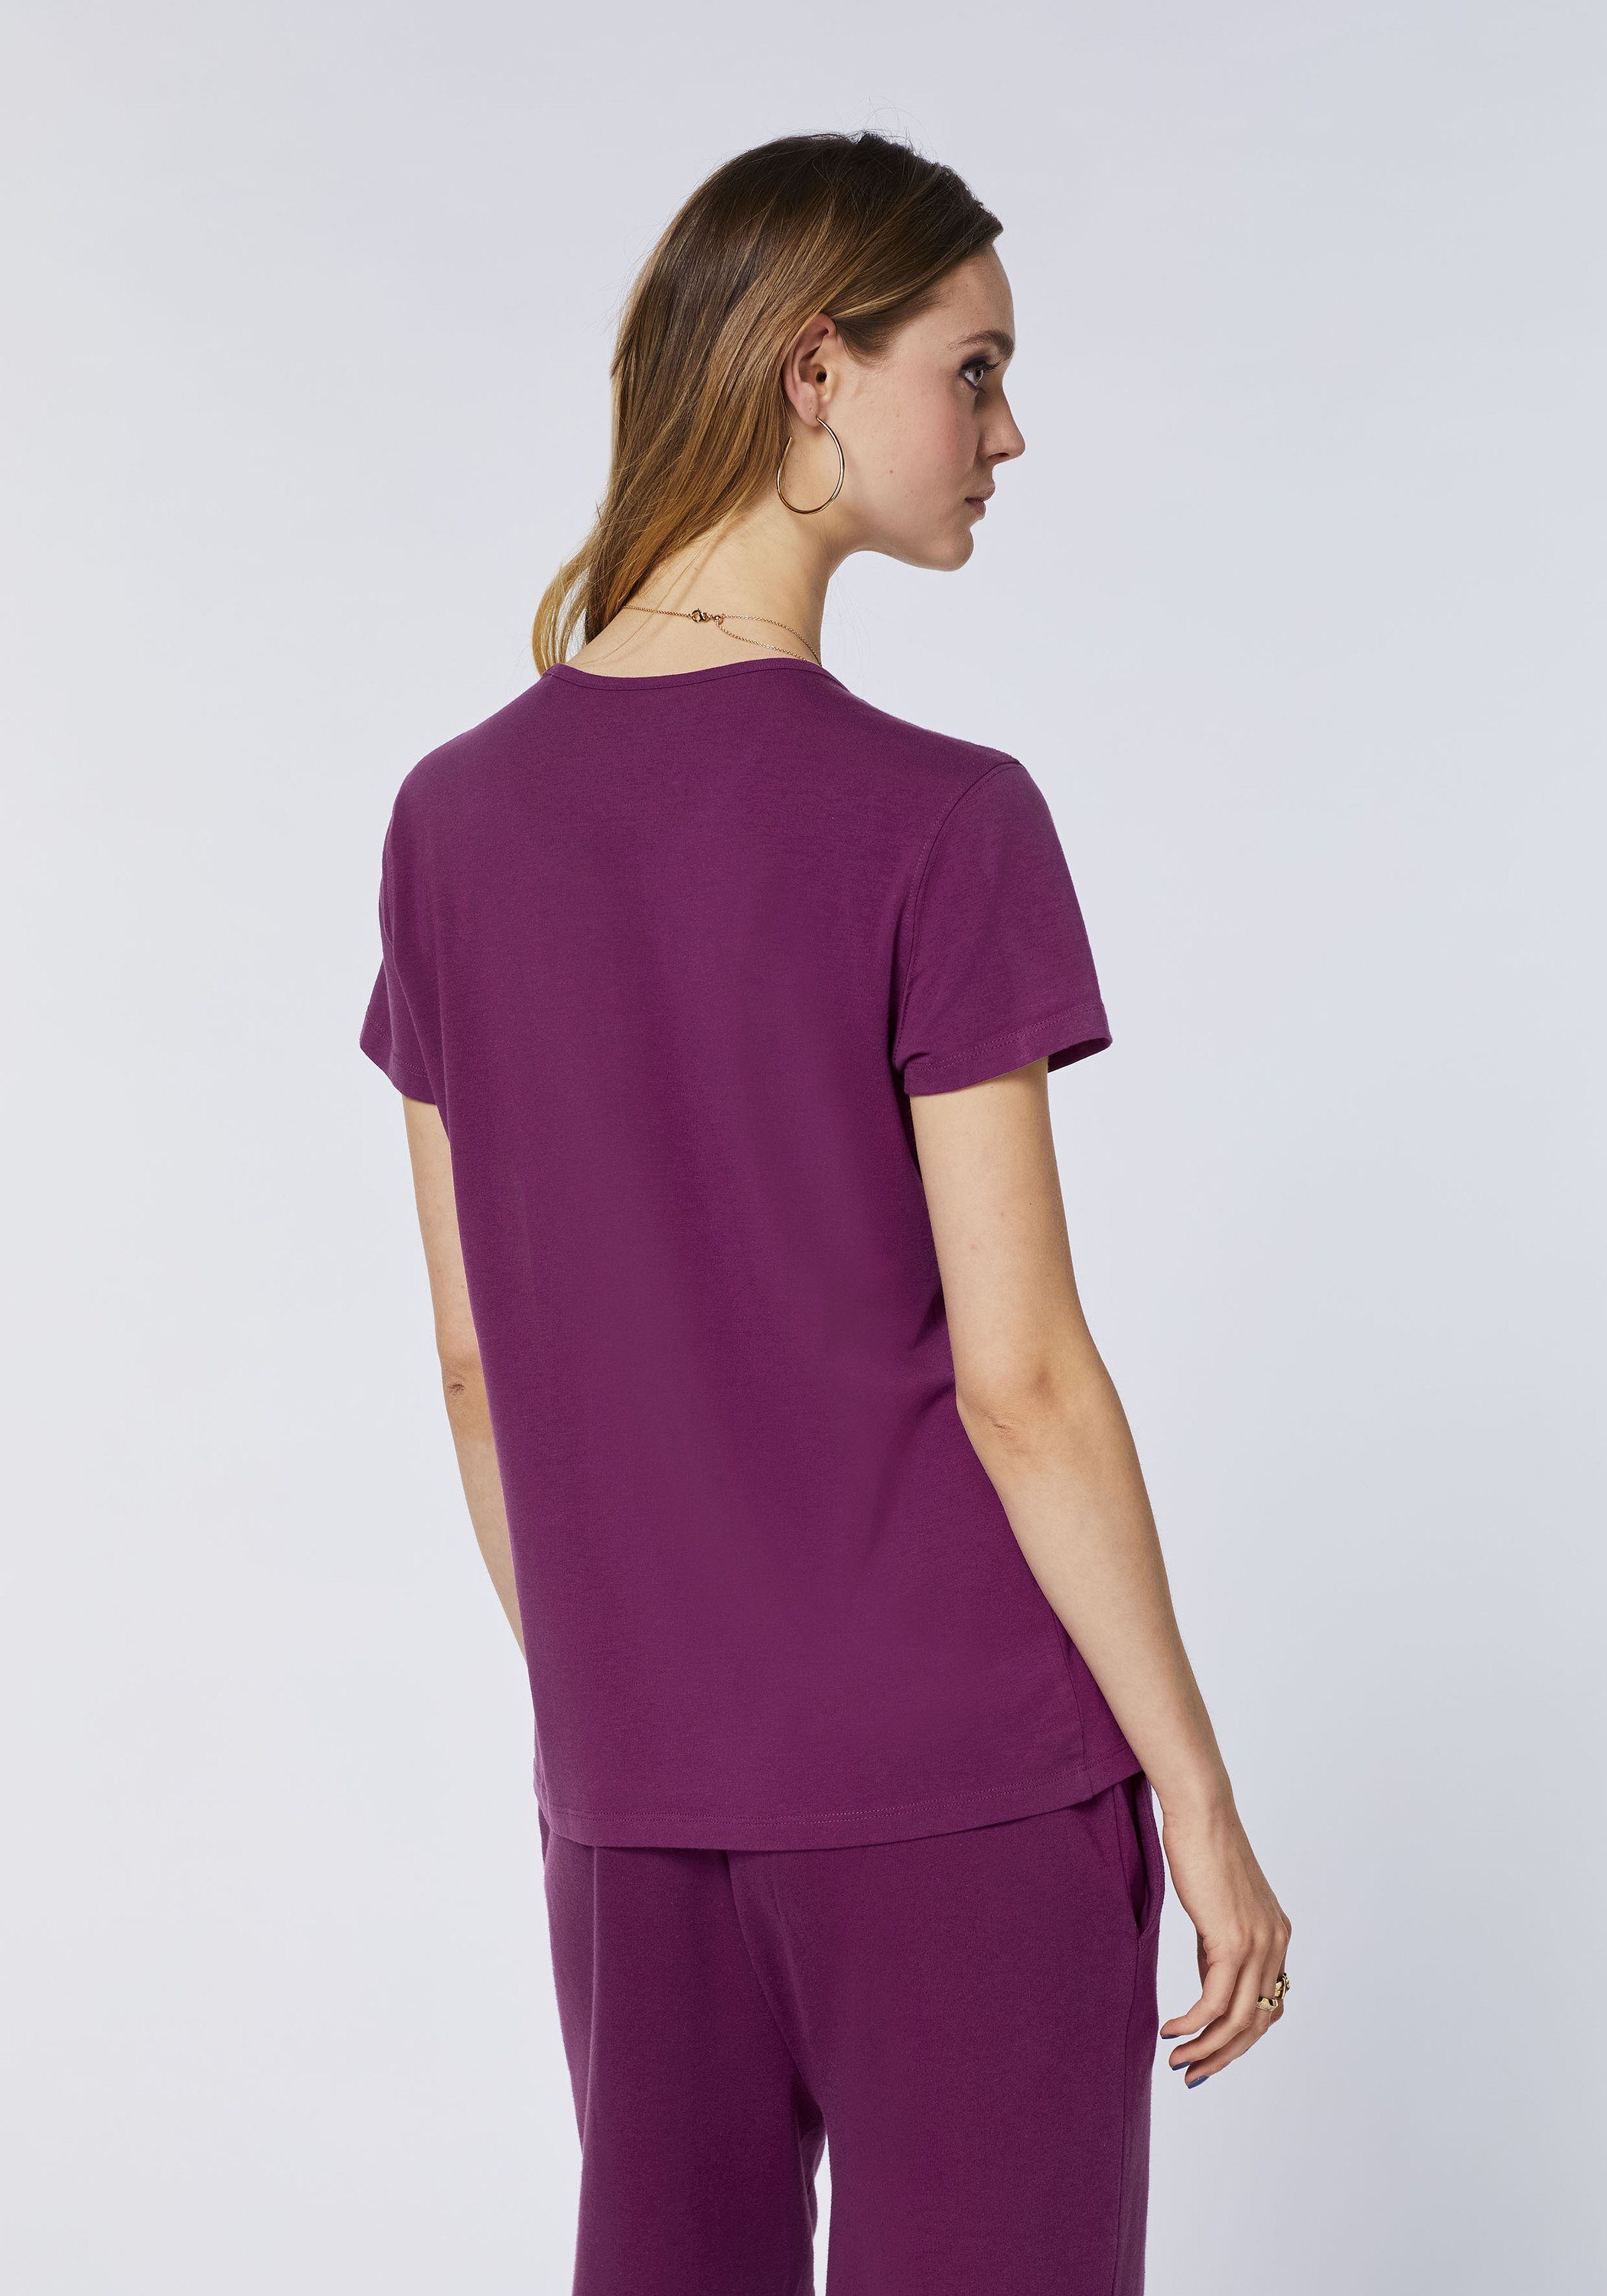 JETTE Label-Print mit 19-2524 Purple SPORT Dark Print-Shirt